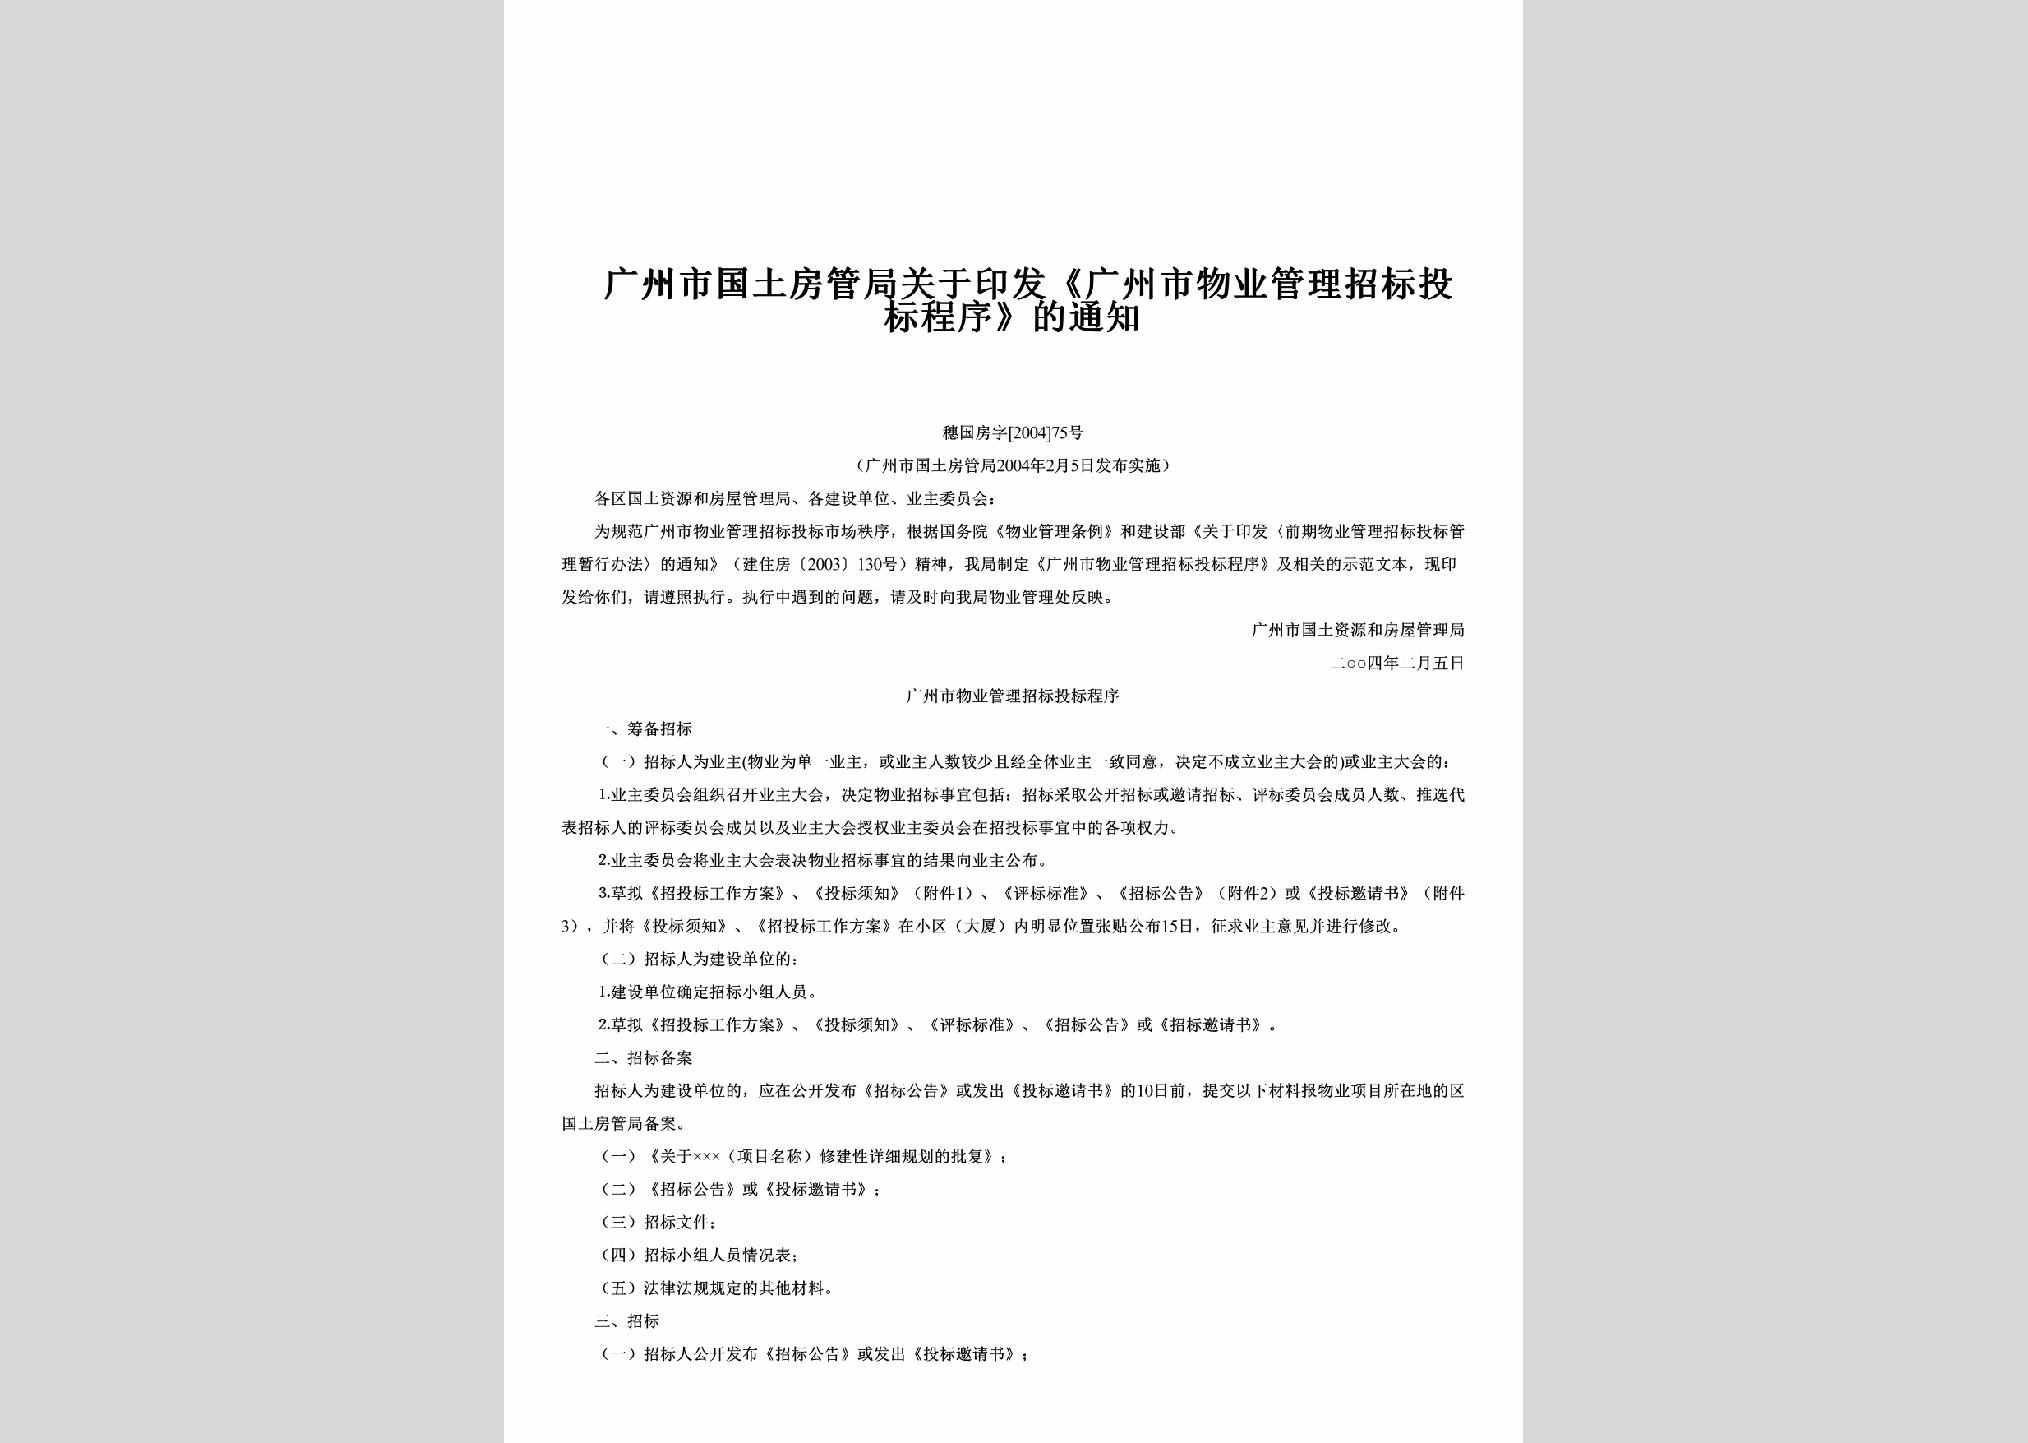 穗国房字[2004]75号：关于印发《广州市物业管理招标投标程序》的通知